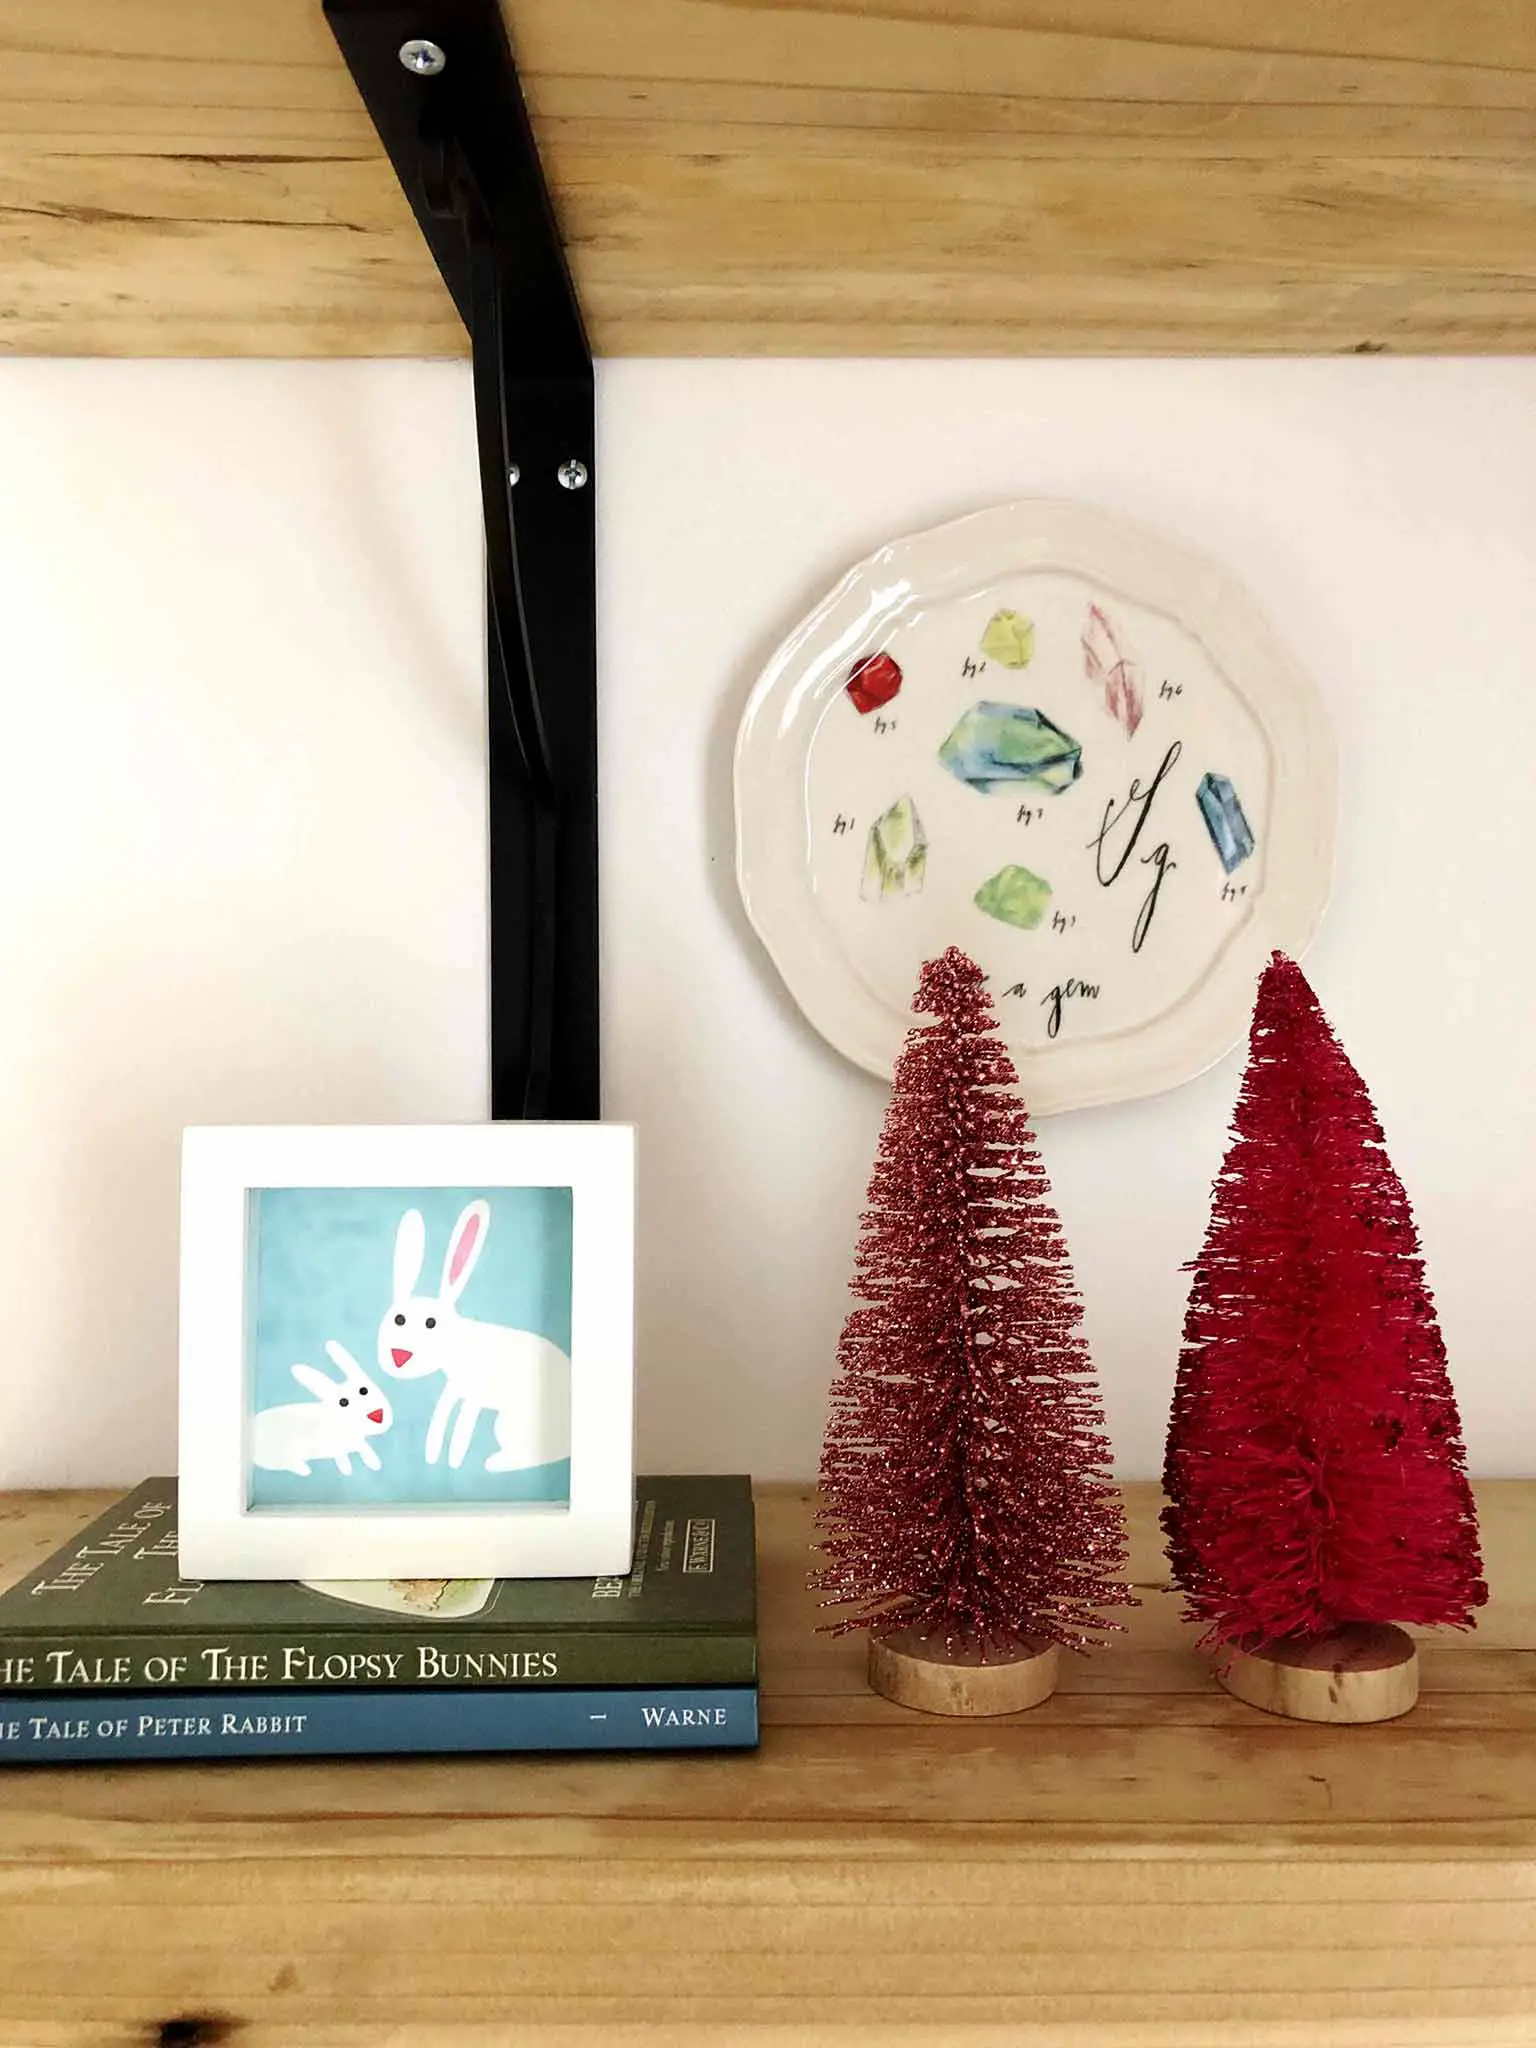 Kids room Christmas decor - Simple Yet Cozy Christmas Decor - That Homebird Life Blog #christmasdecor #christmasinspiration